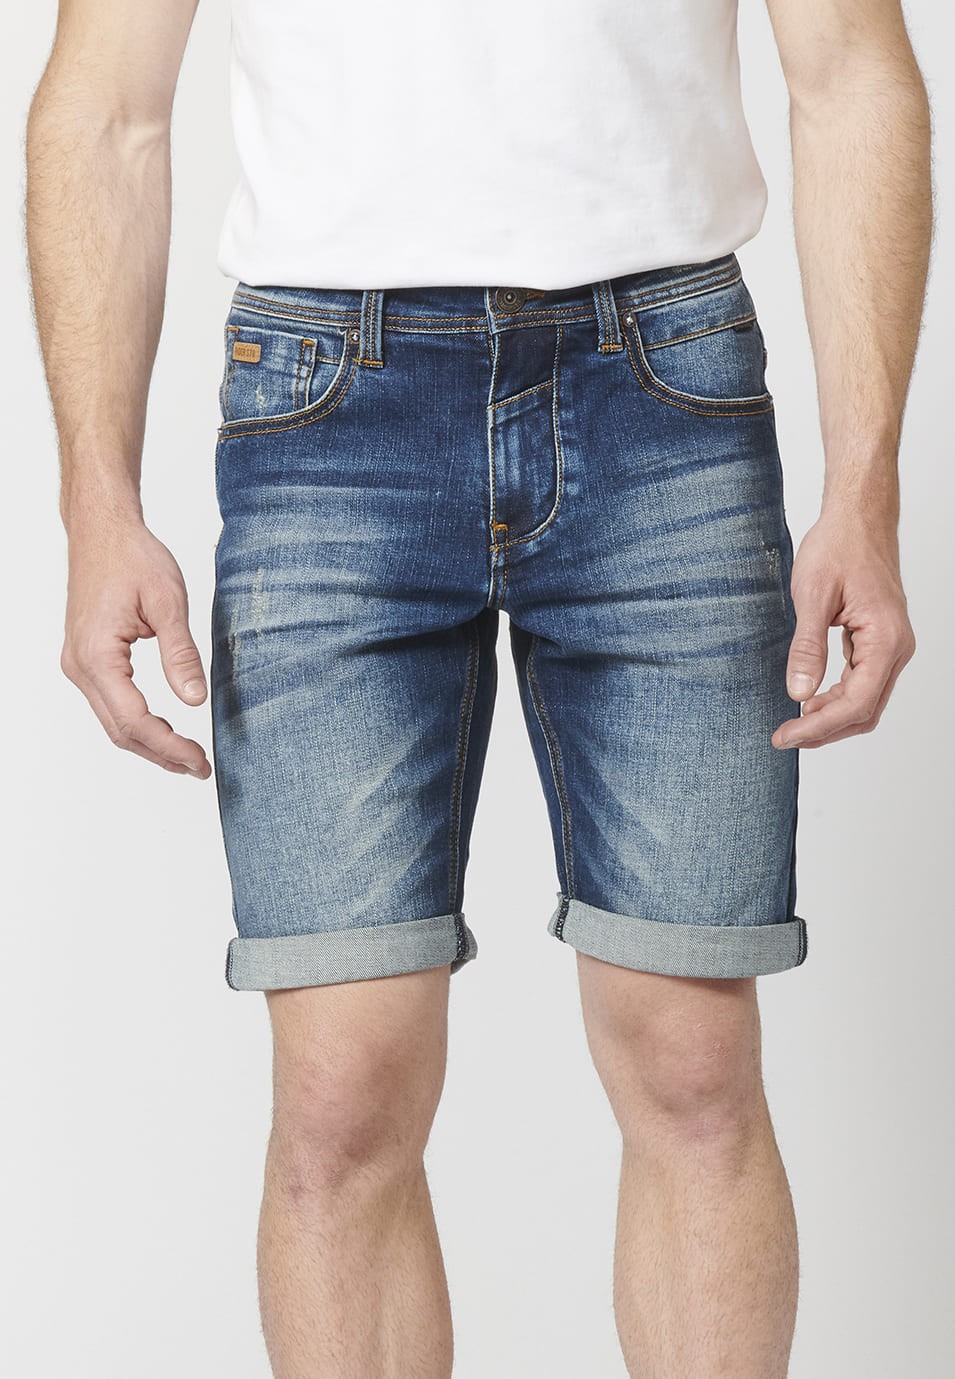 Pantalon corto denim regular fit con cinco bolsillos y efecto gastado para Hombre 2